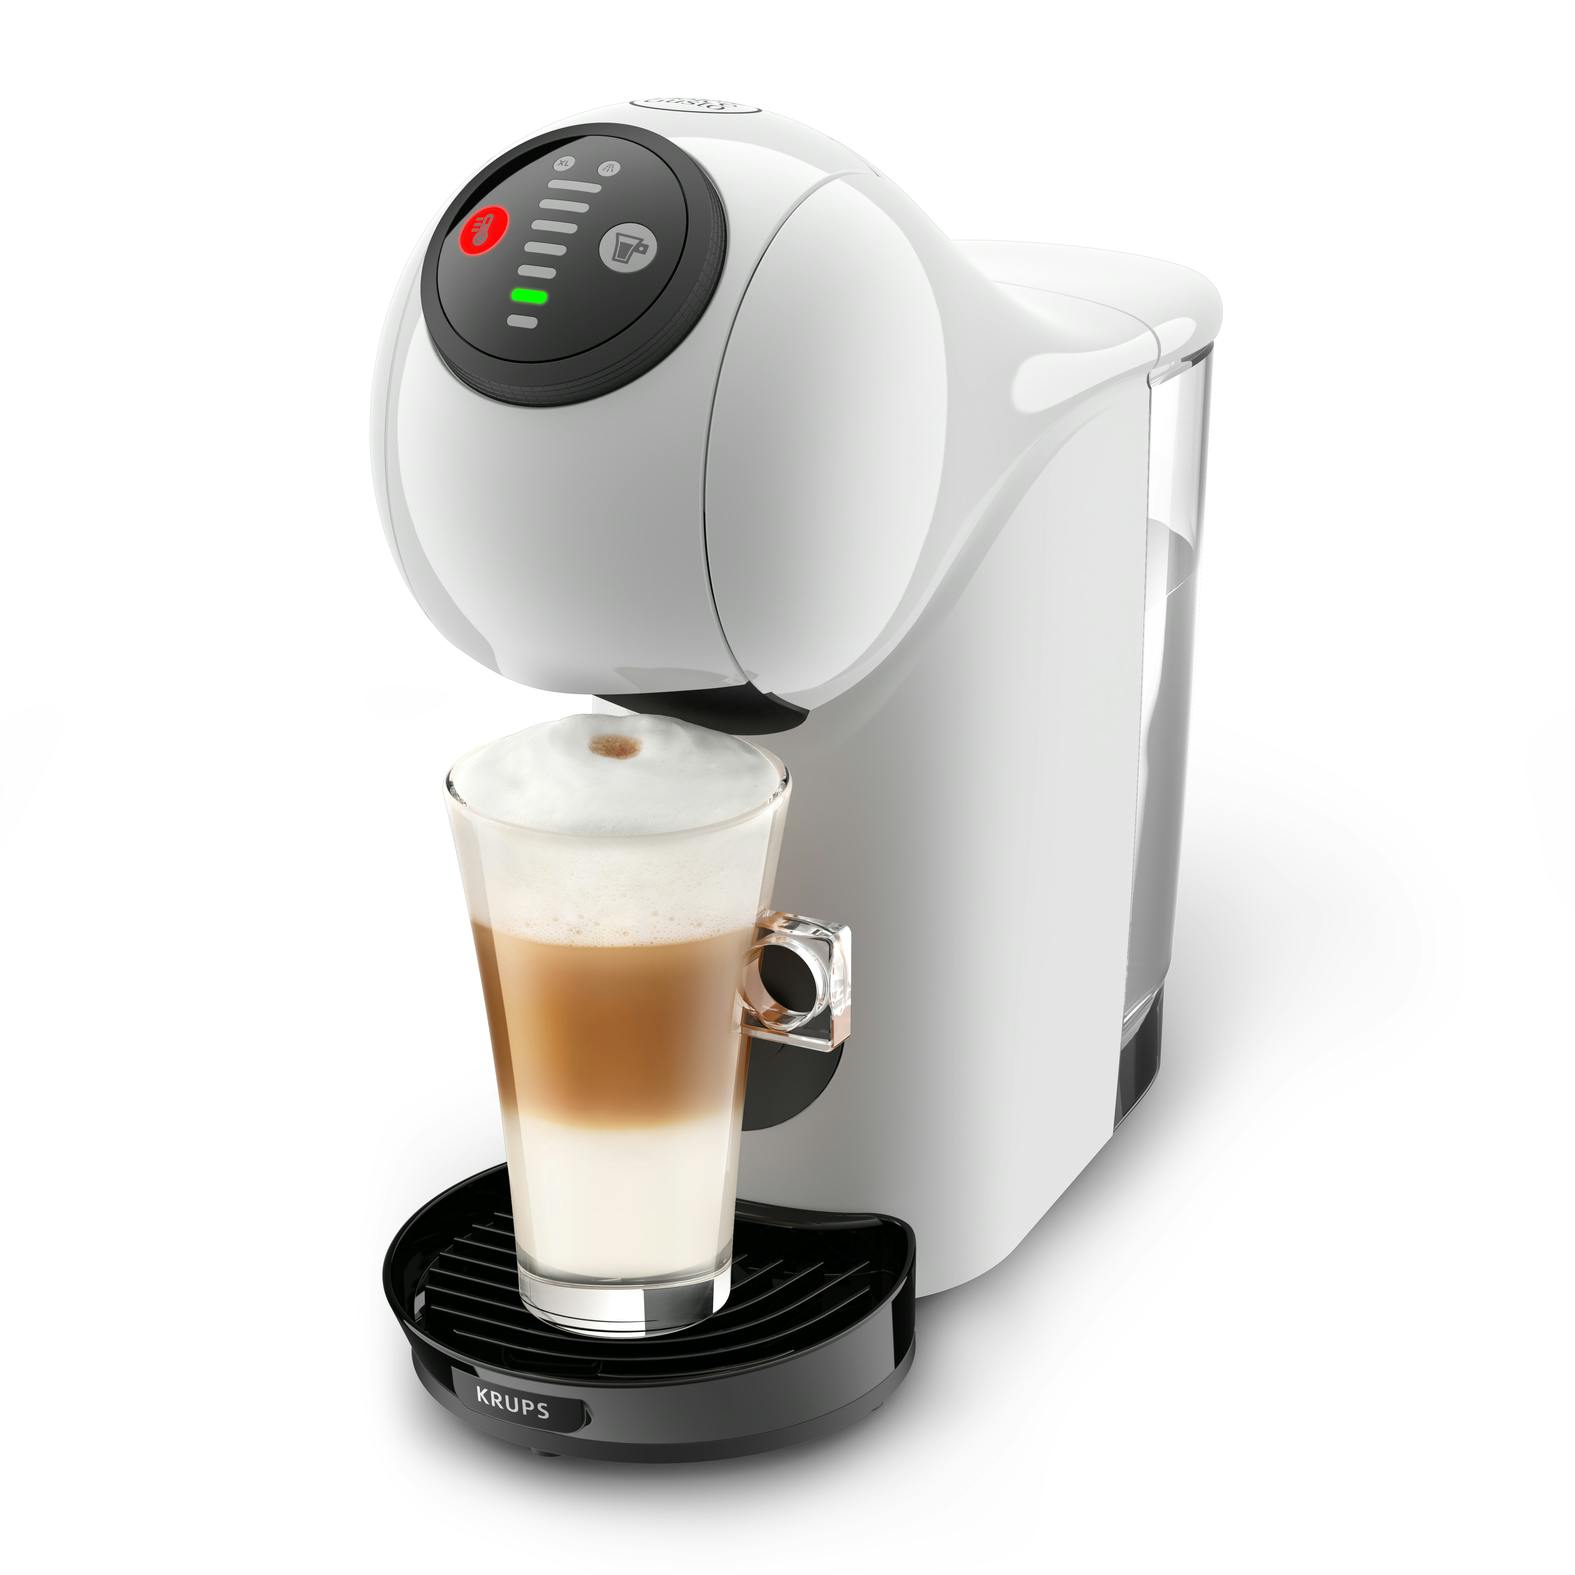 Krups KP240 Semi-automática Máquina espresso 0,8 L